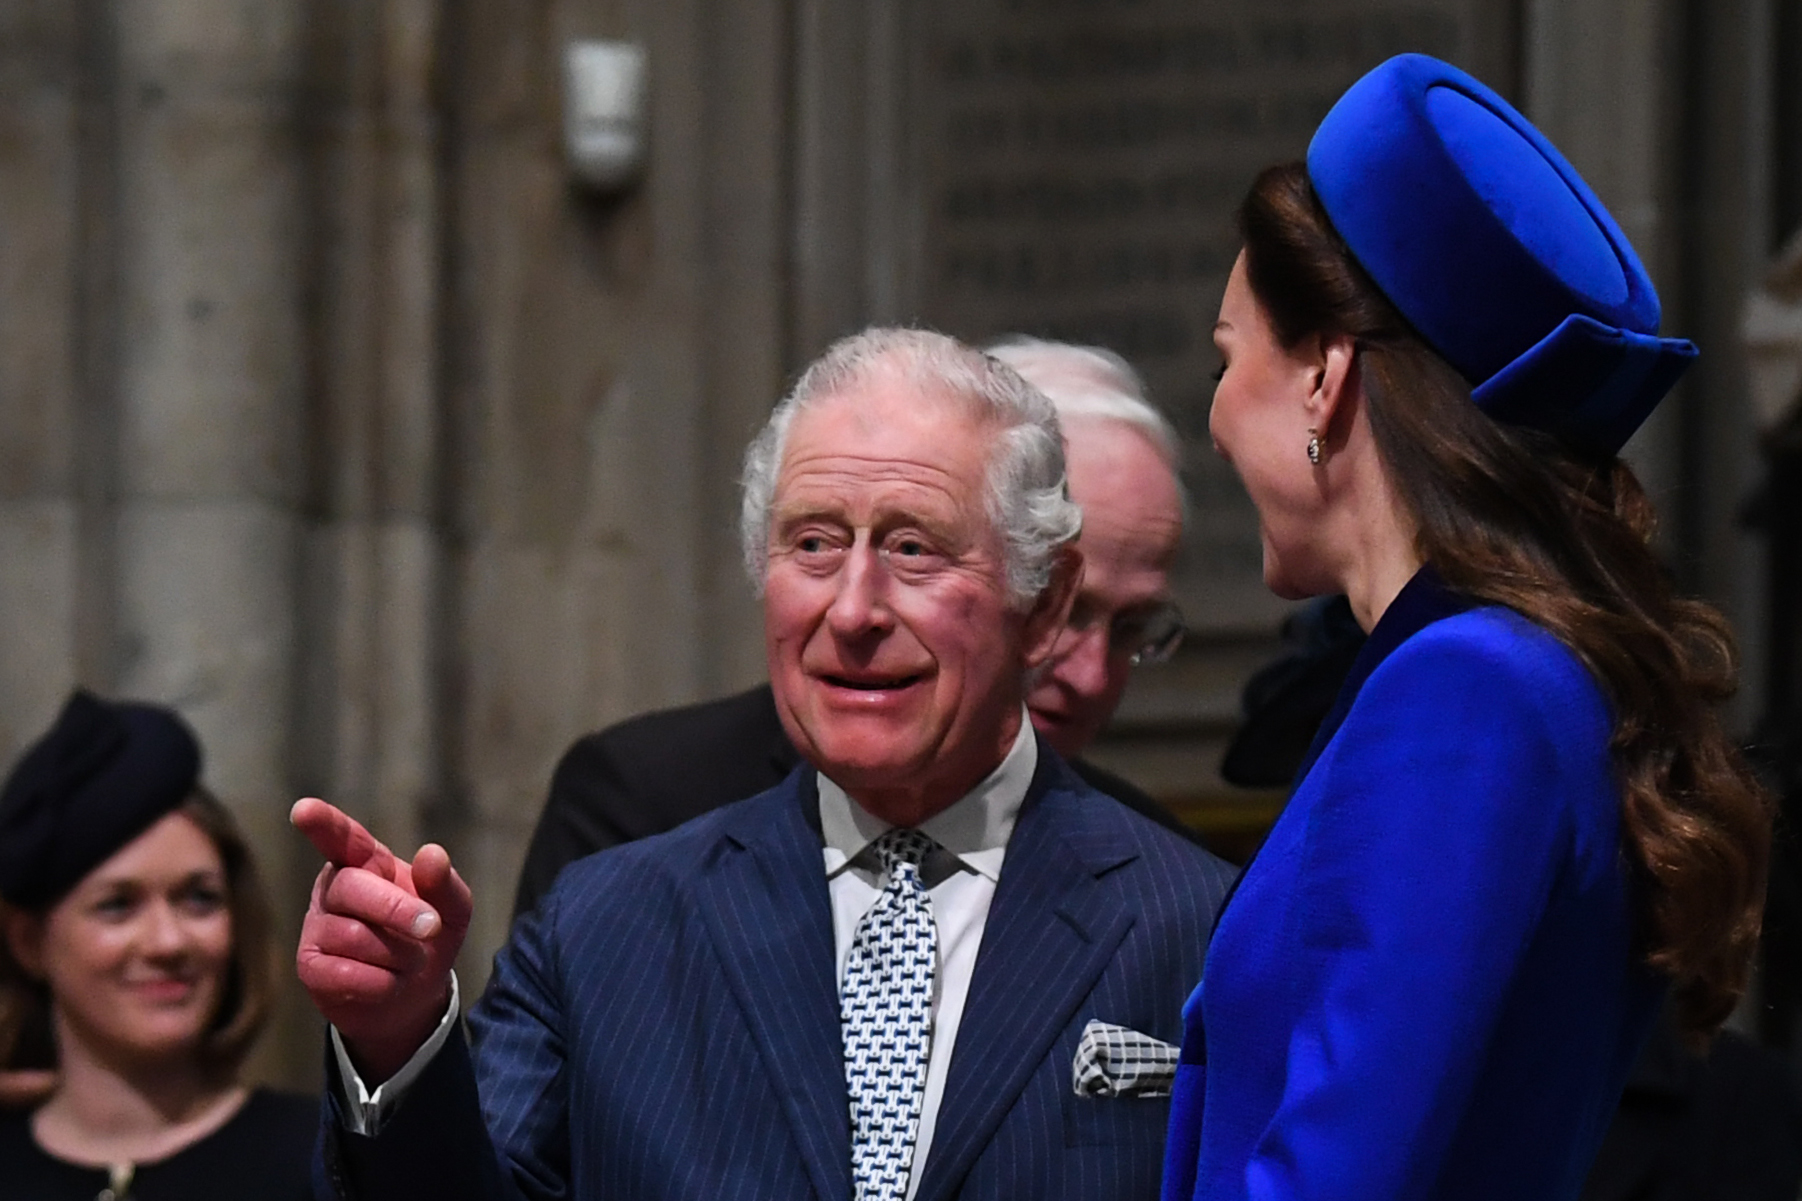 El rey Charles III y la princesa Catherine en la ceremonia de servicio del Día de la Commonwealth en la Abadía de Westminster el 14 de marzo de 2022 en Londres, Inglaterra | Foto: Getty Images